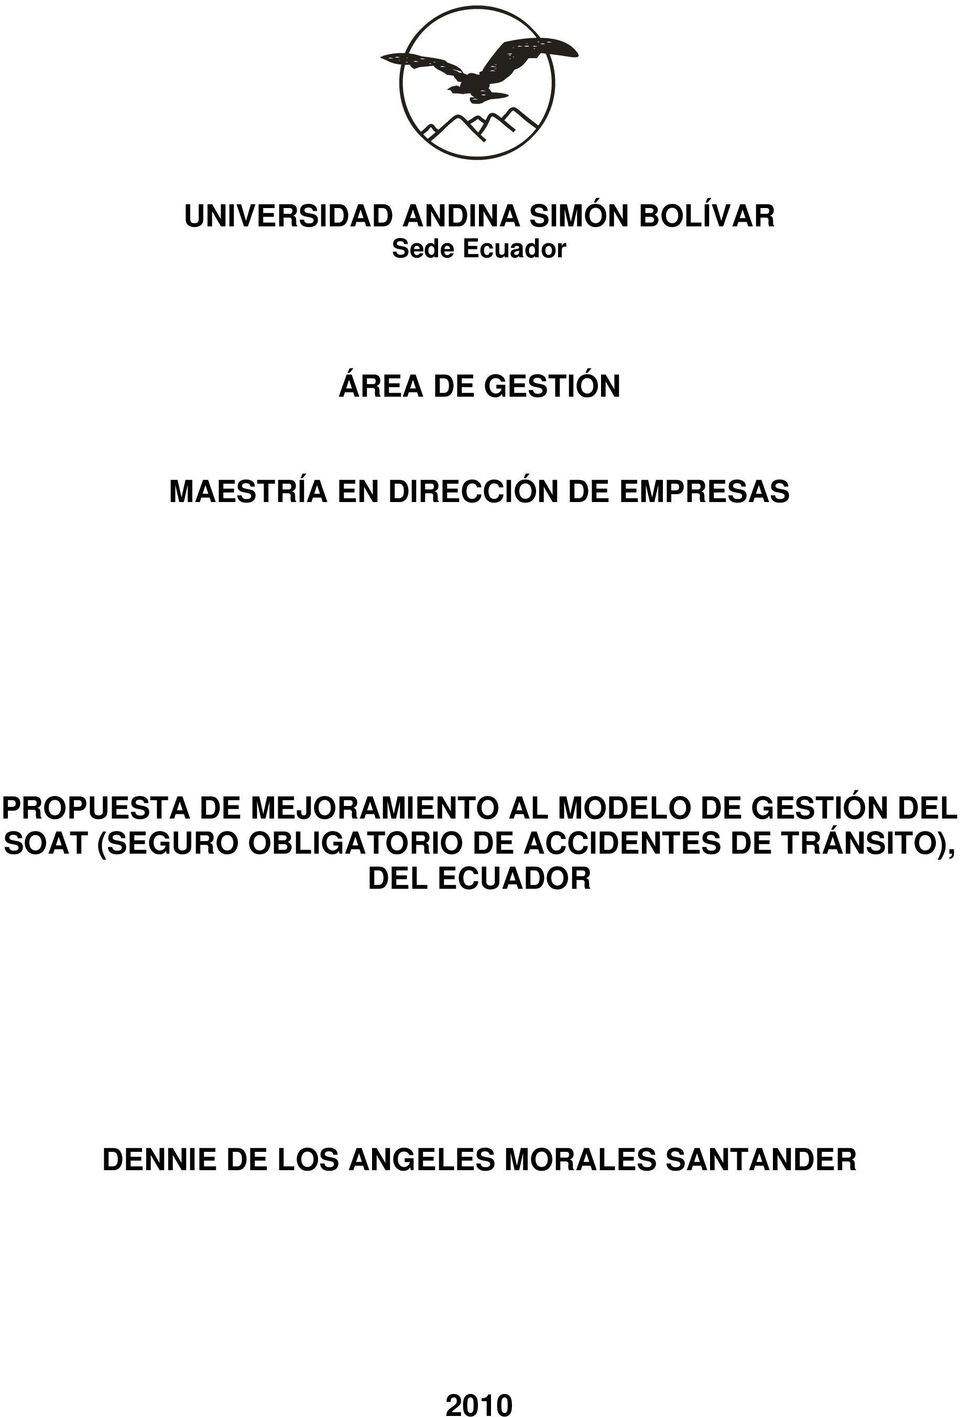 MODELO DE GESTIÓN DEL SOAT (SEGURO OBLIGATORIO DE ACCIDENTES DE